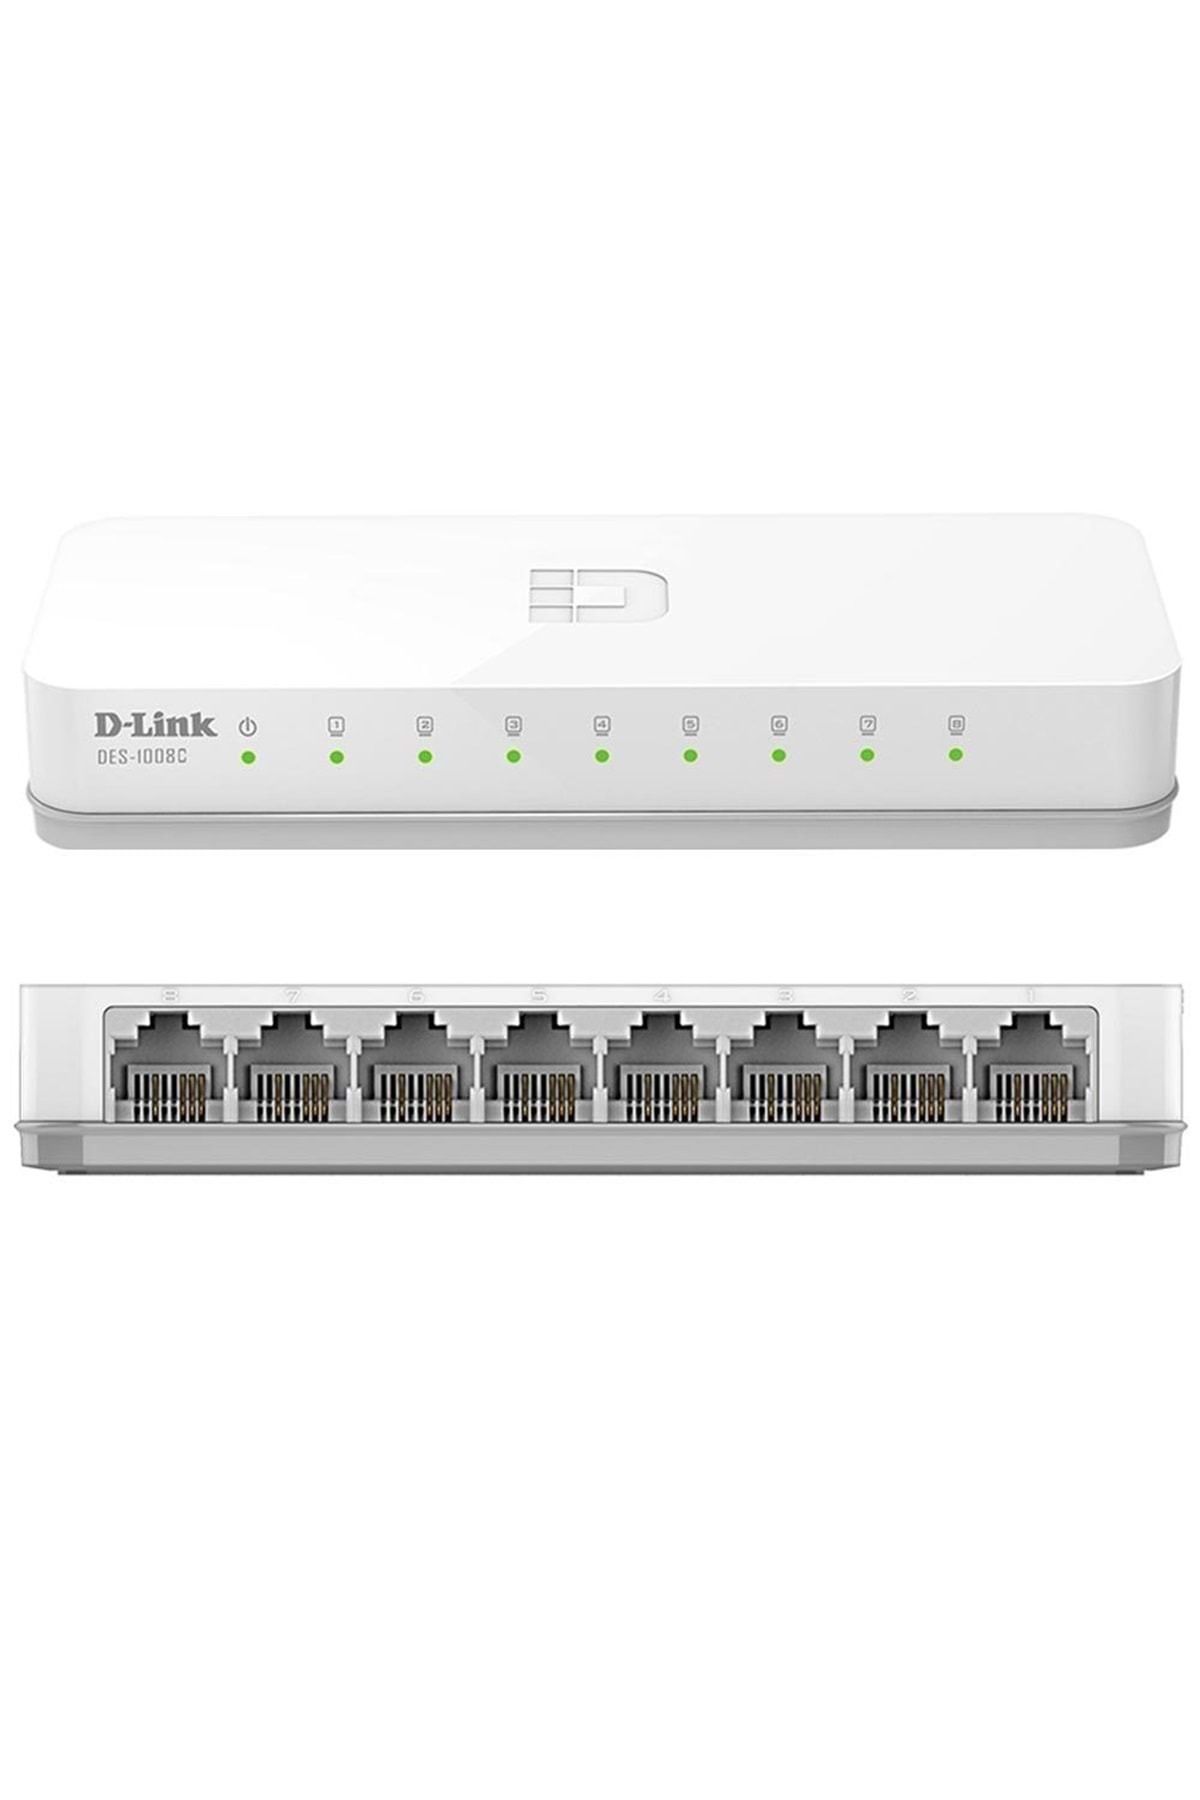 D-Link Des-1008c 8 Port 10/100 Mbps Switch